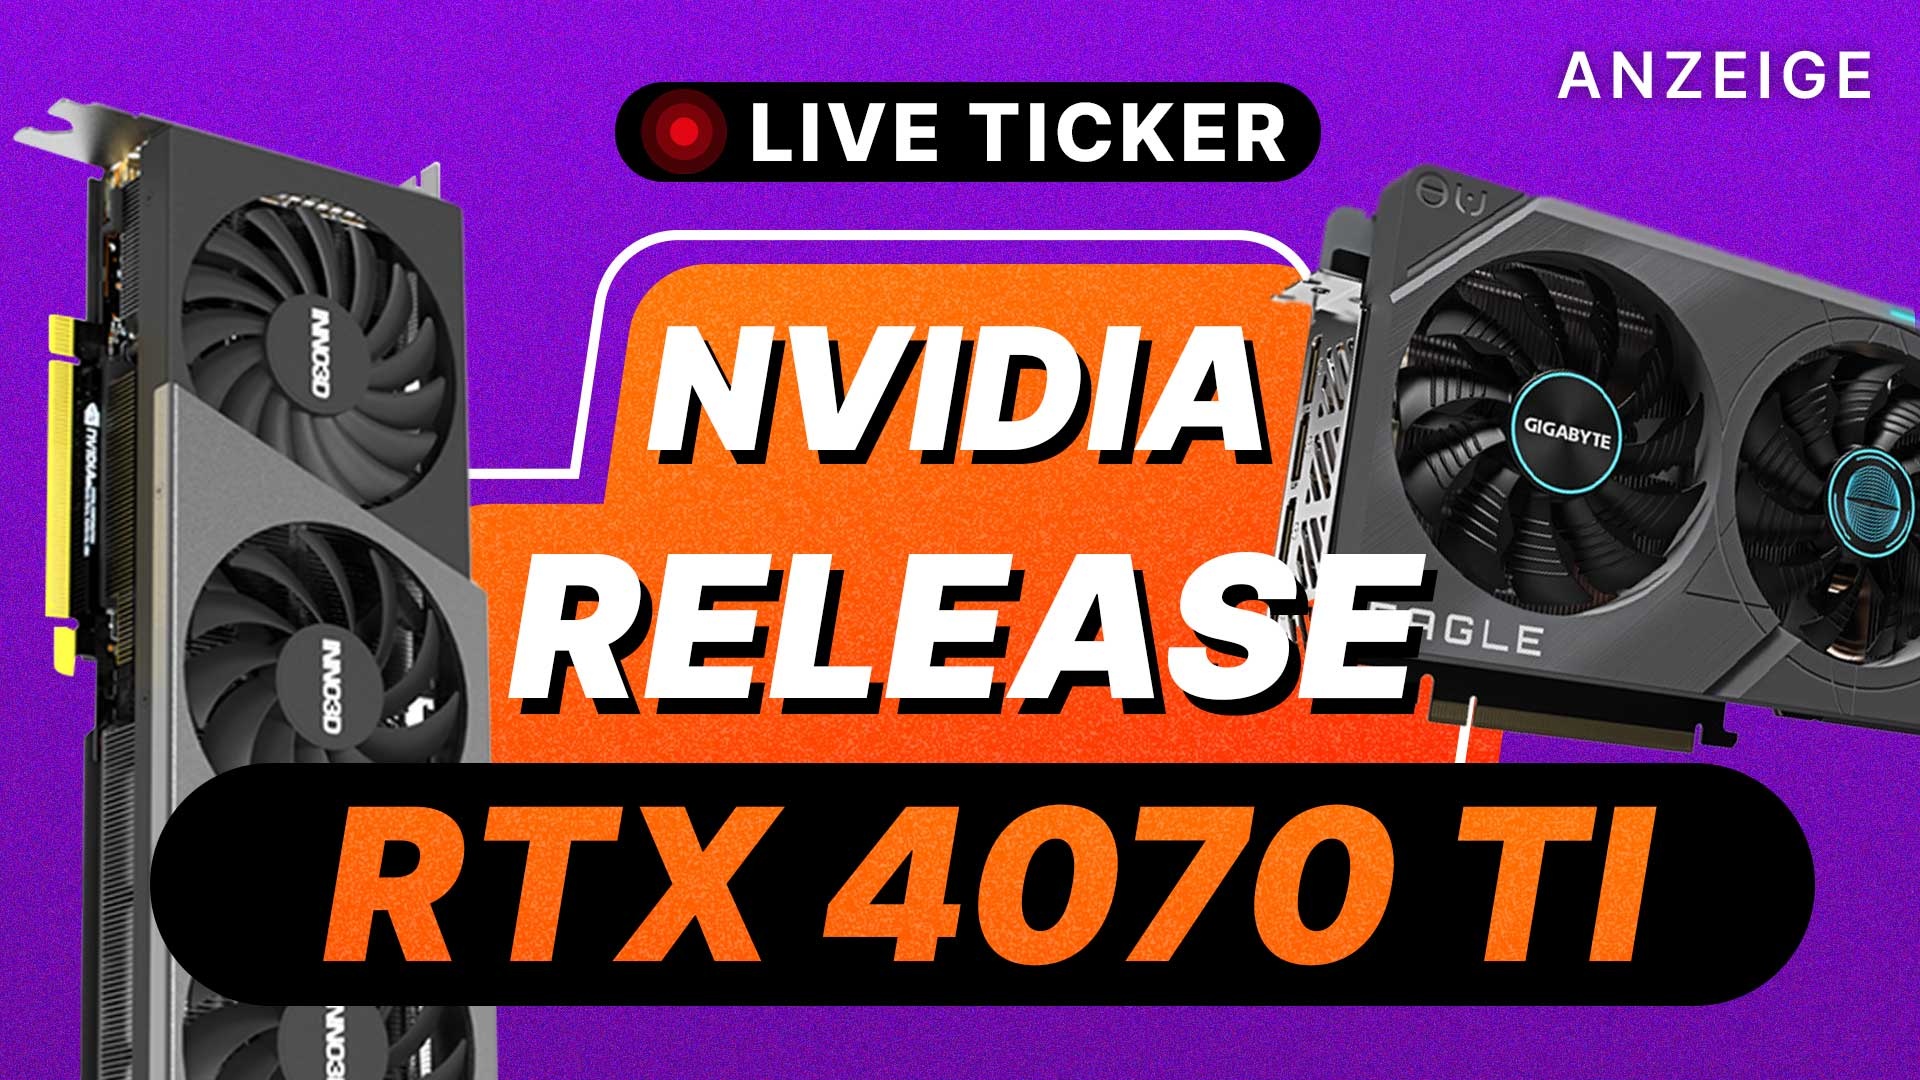 NVIDIA GeForce RTX 4070 Ti kaufen Verfügbarkeit zum Release der Grafikkarte am 05.01.